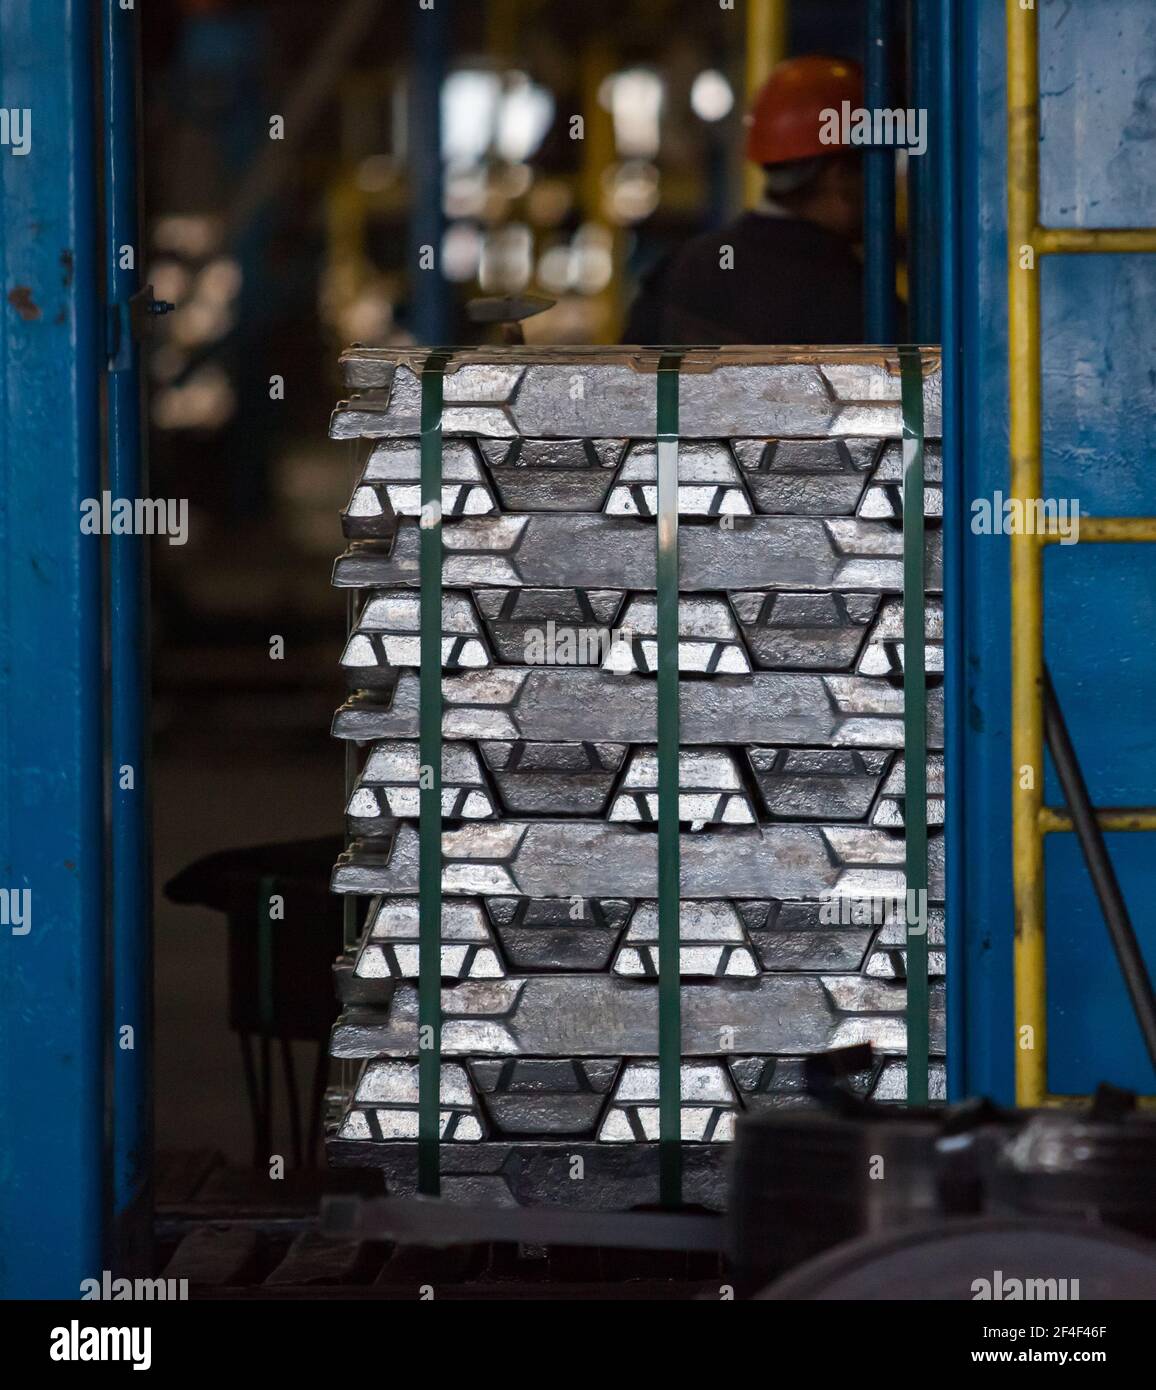 Pavlodar Aluminium electrolysis plant. Pallet of packed aluminum ingots on warehouse. Stock Photo